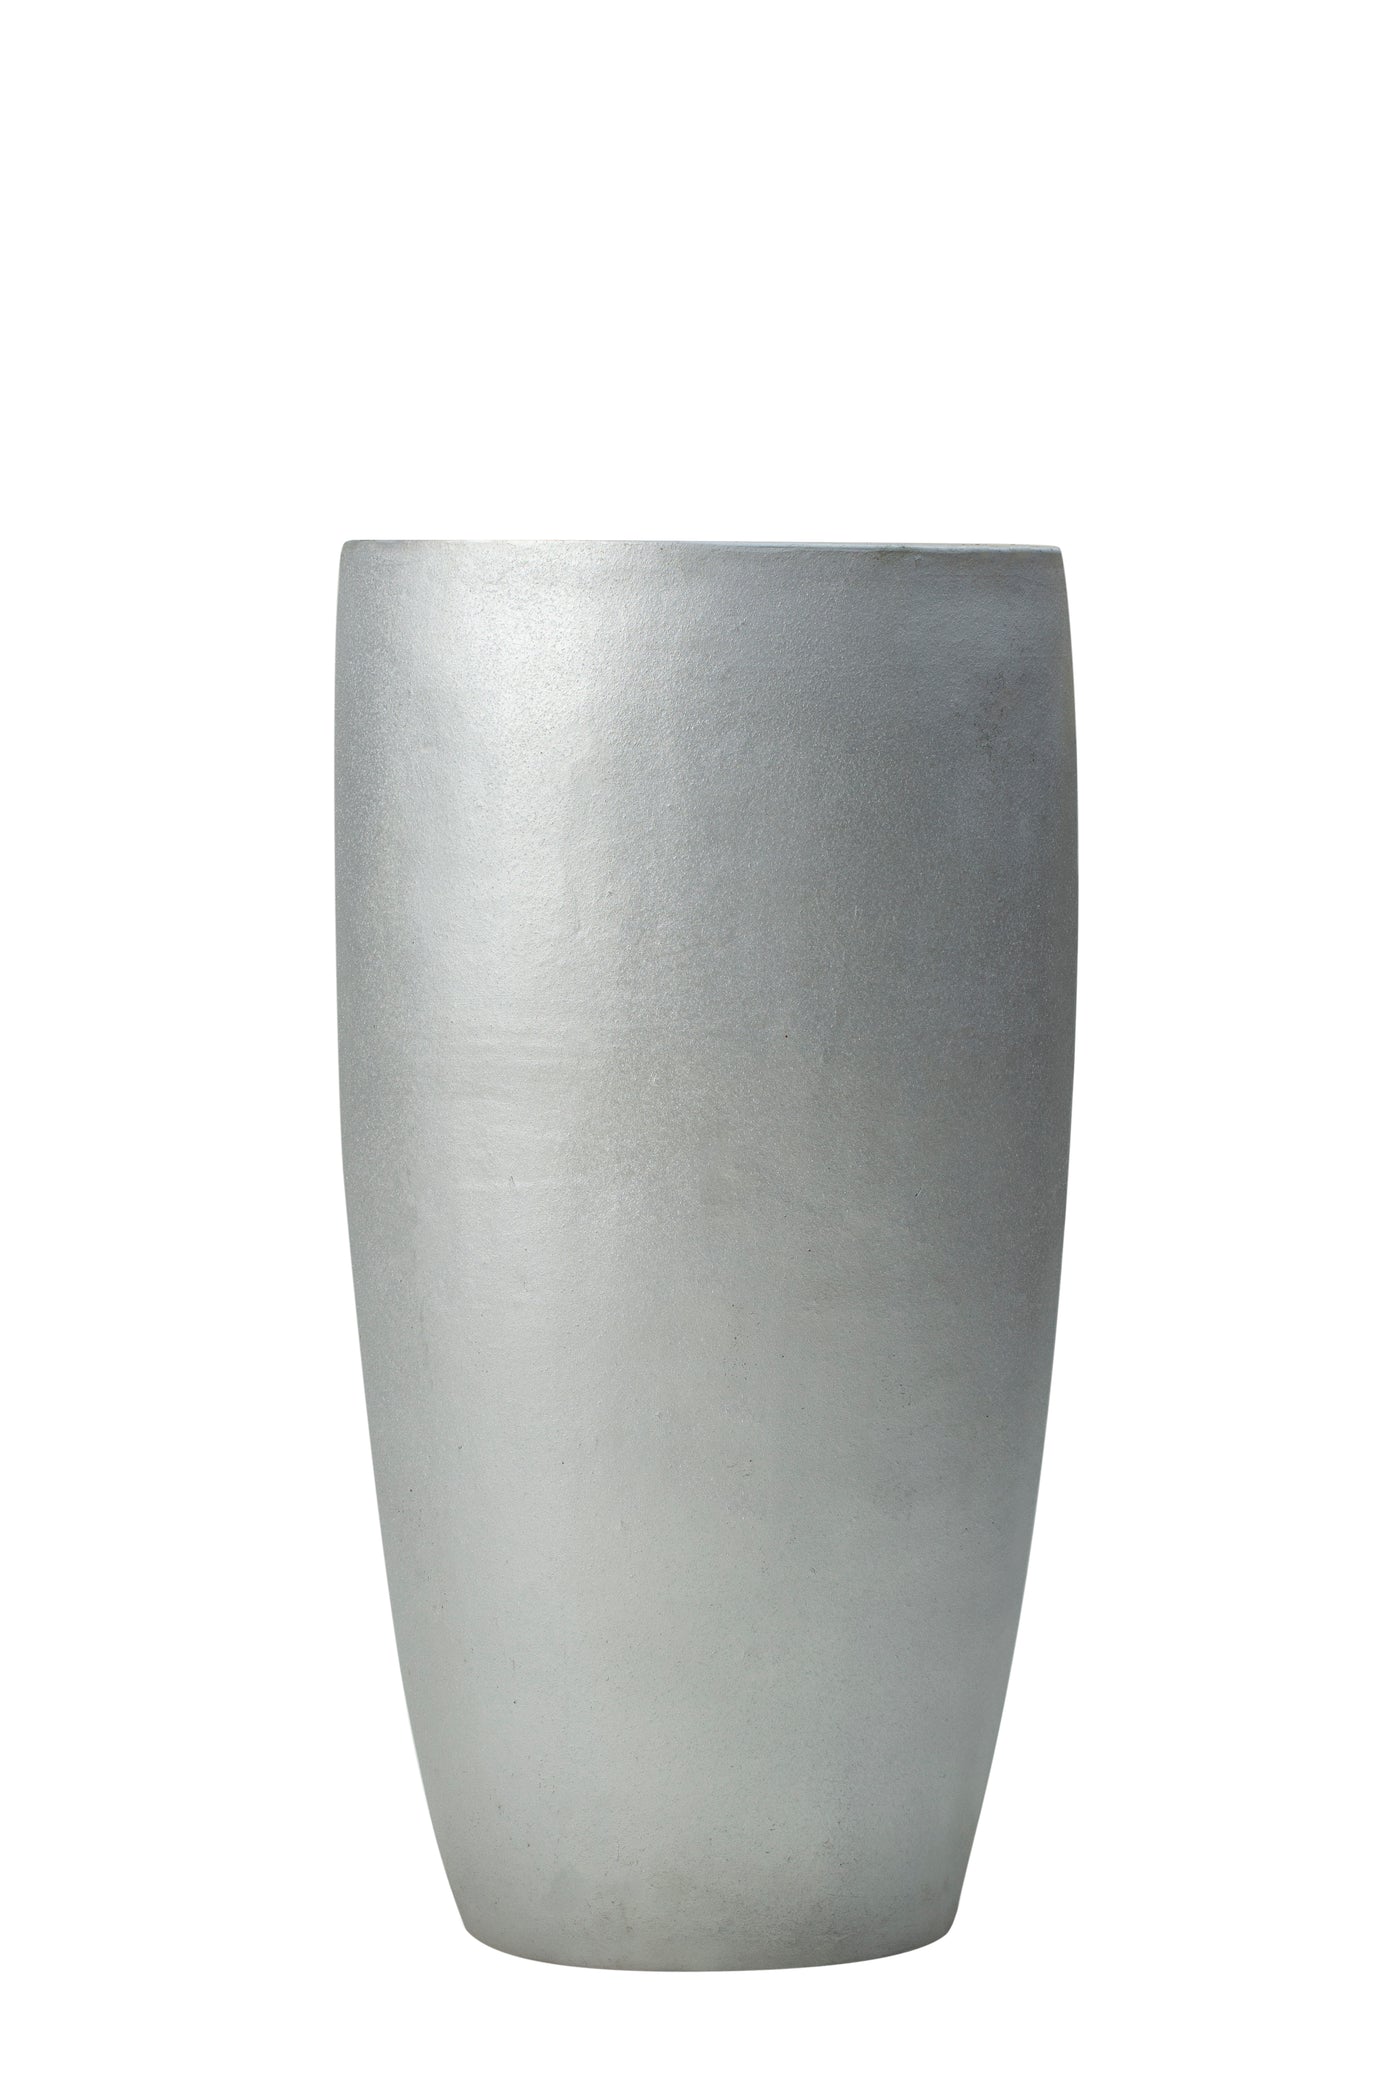 Ghiveci flori D46XH90 cm ceramic Partner extra, argintiu